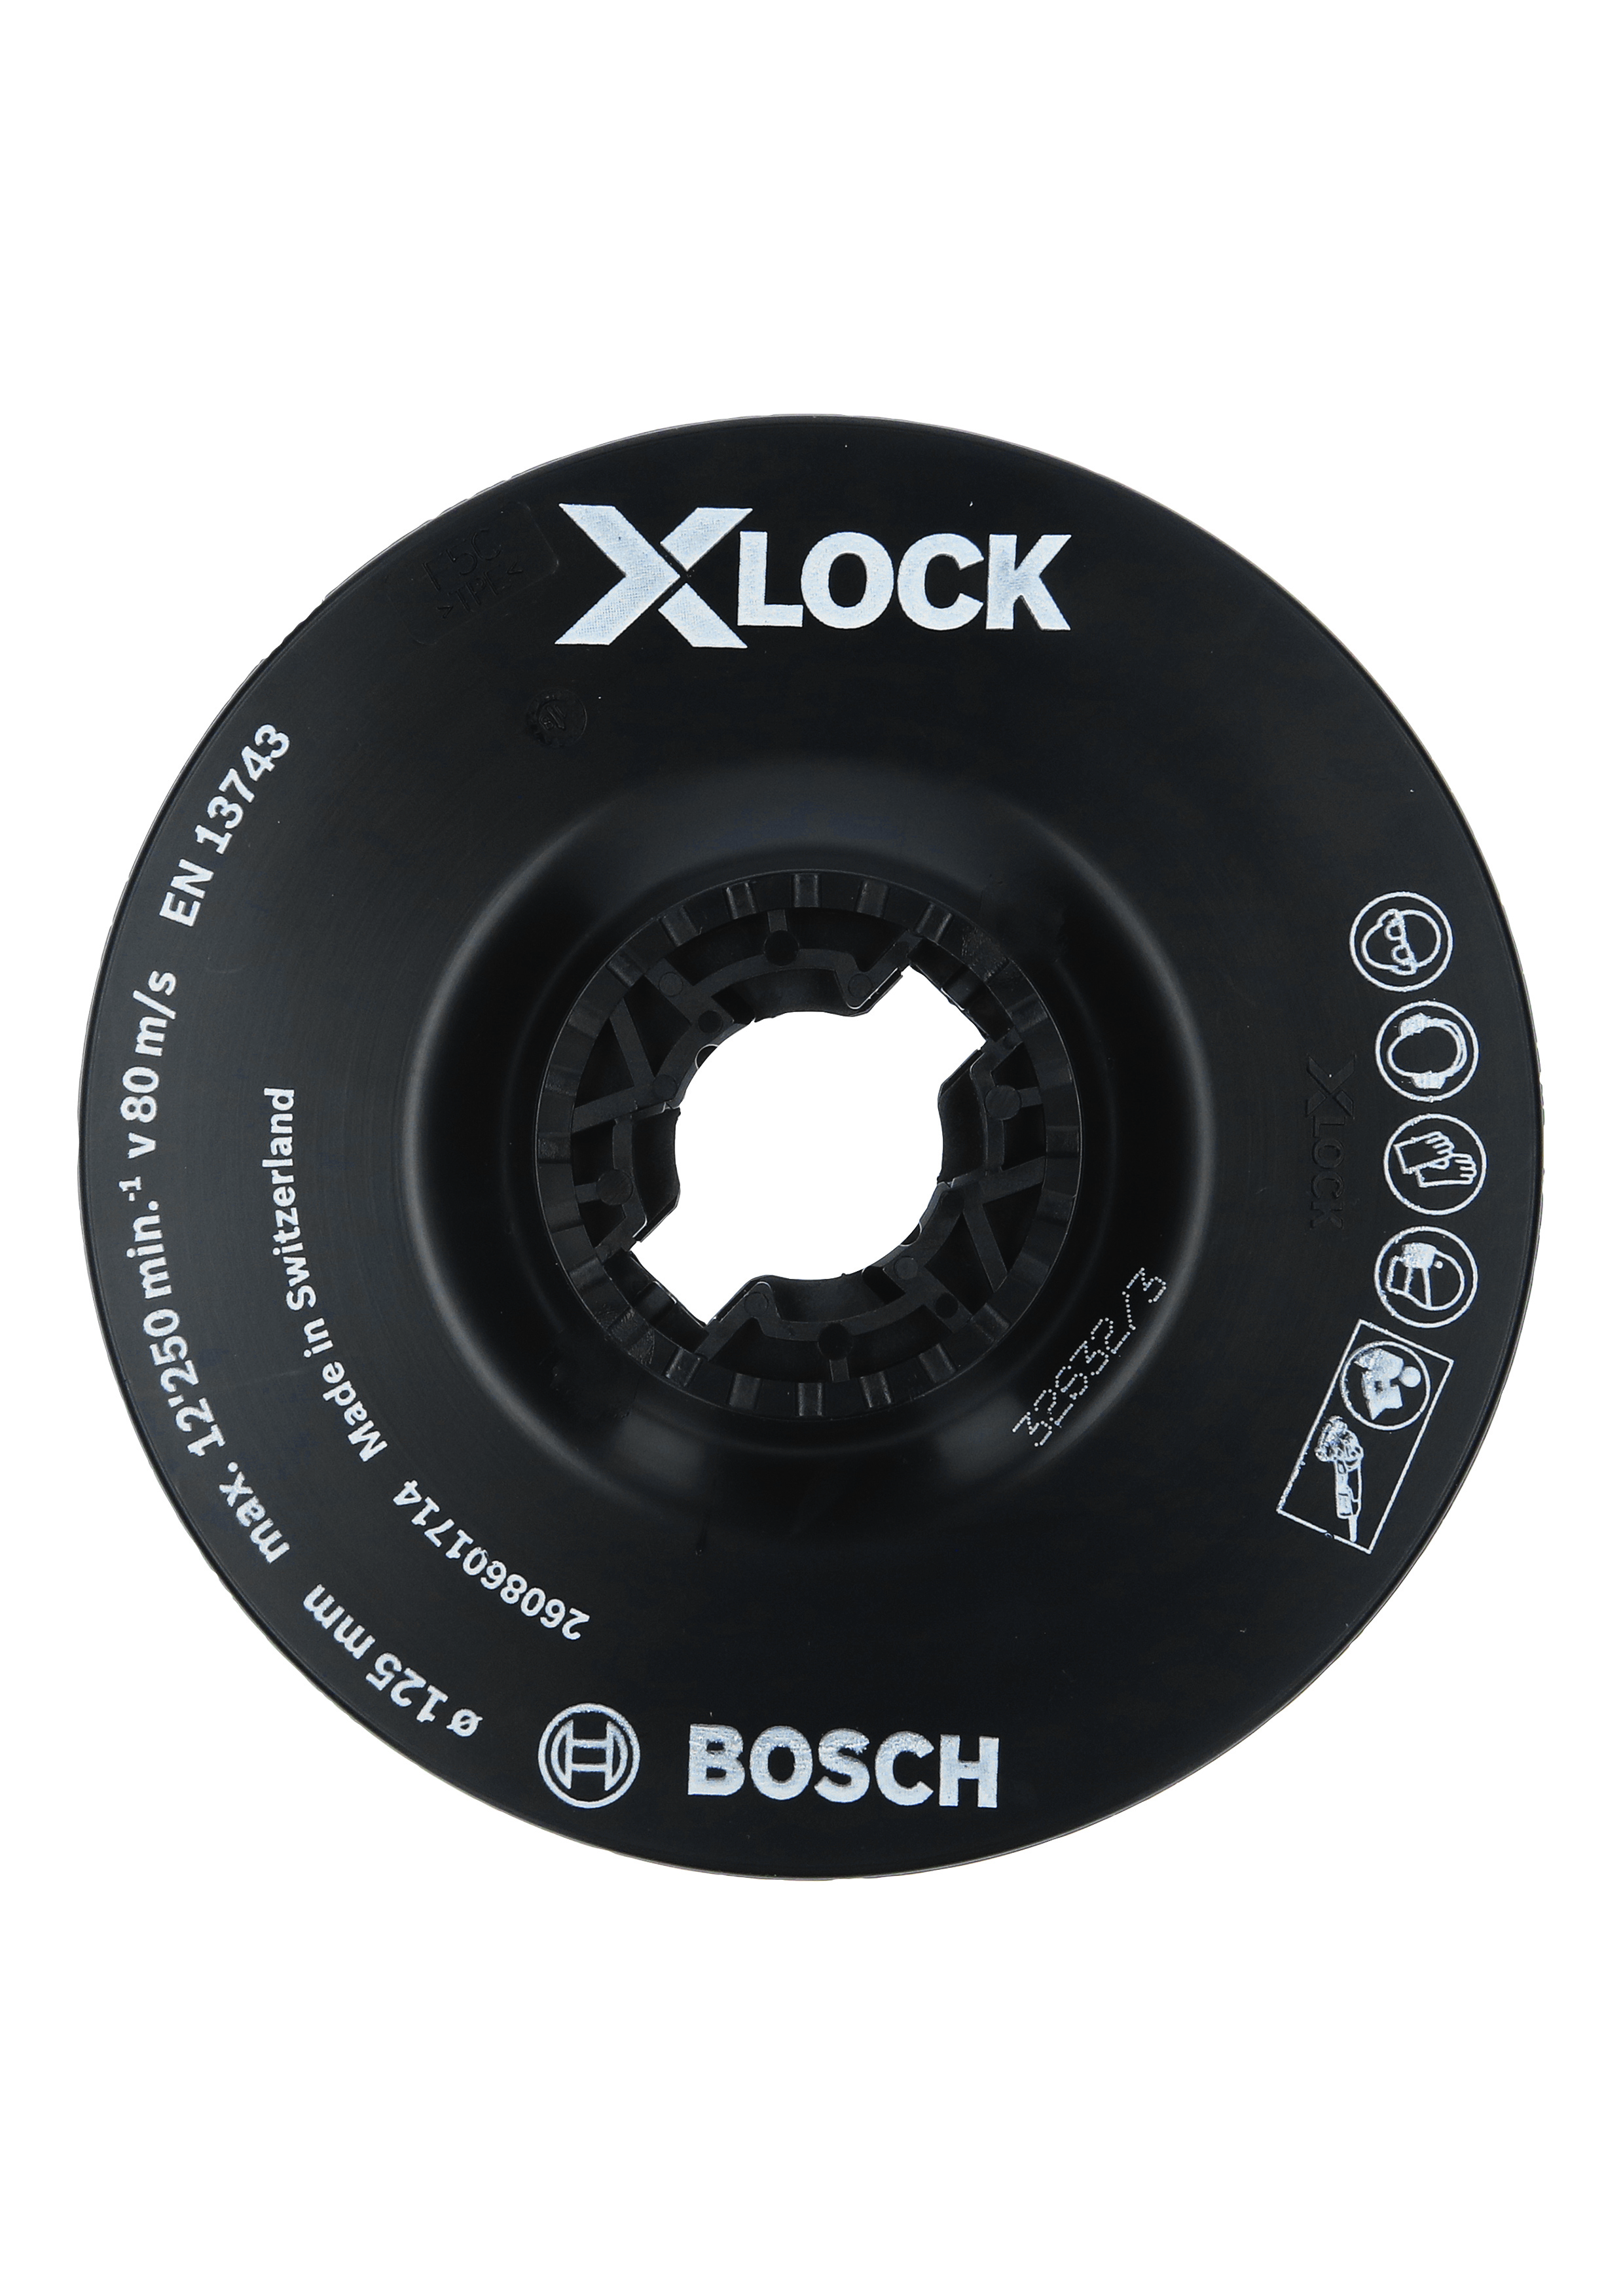 BOSCH Stützteller X-LOCK soft Ø125 mm 